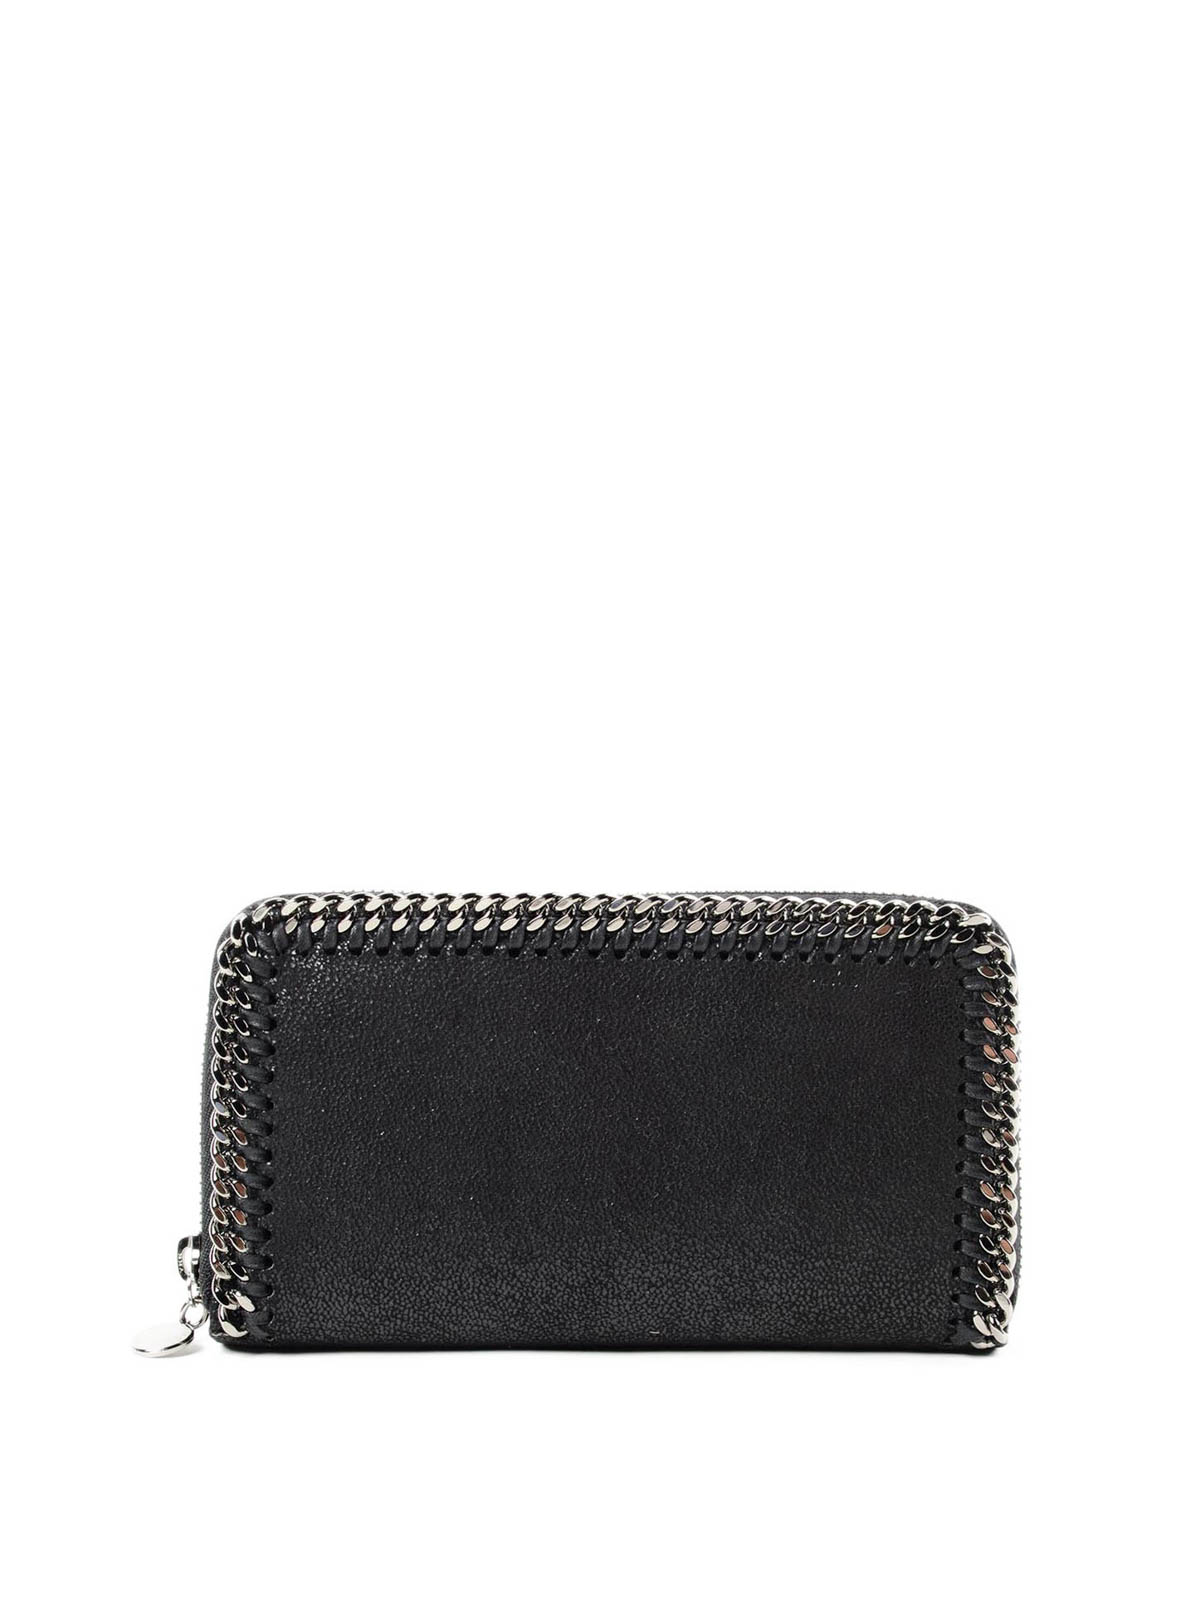 Stella Mccartney Zip Around Falabella Wallet In Black